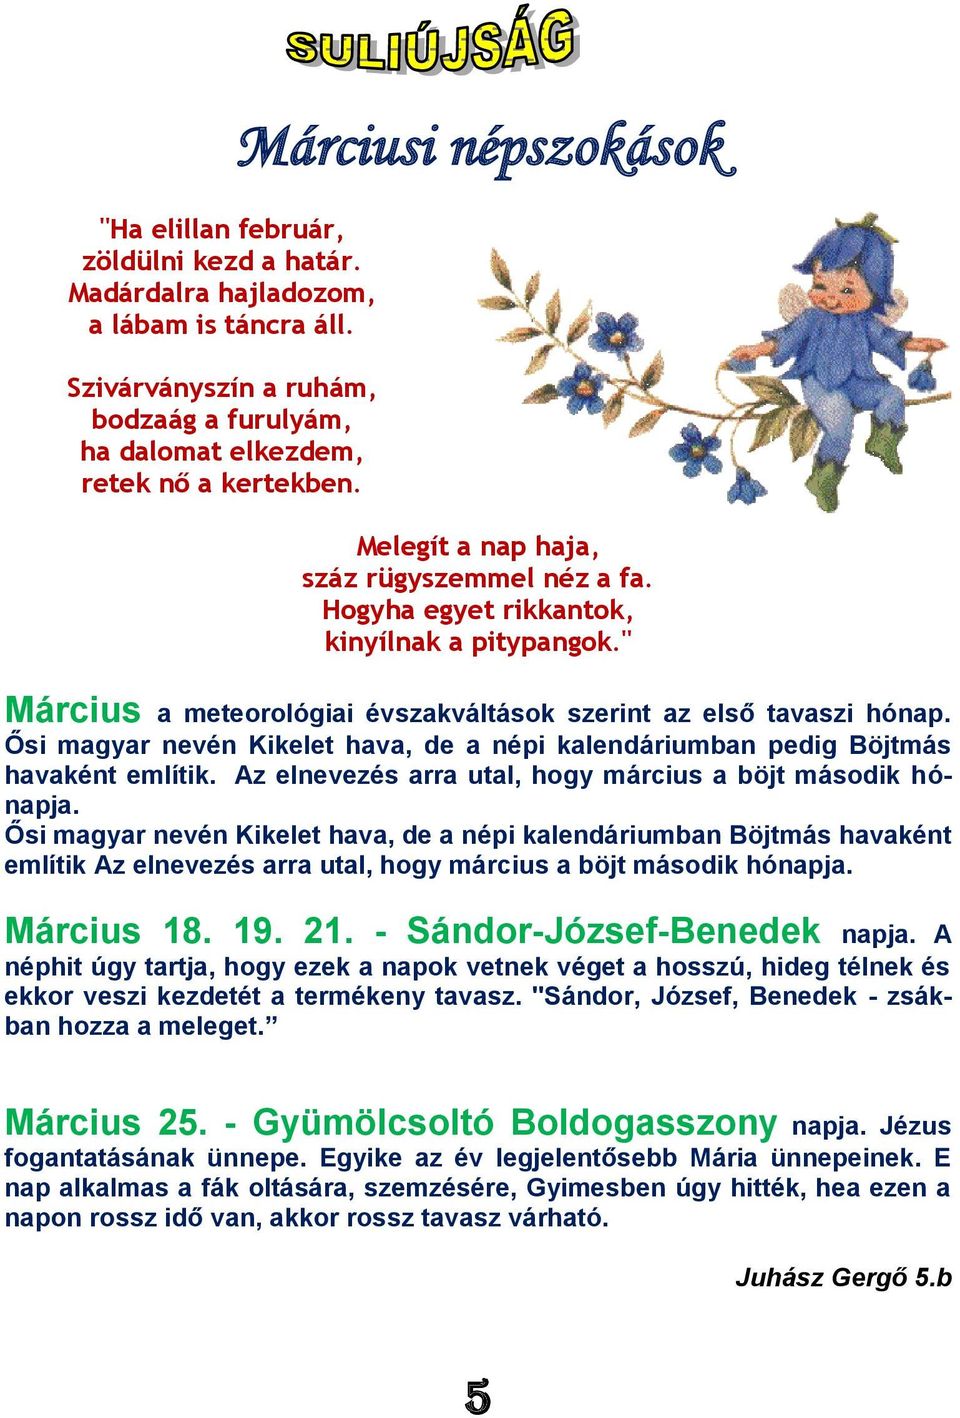 Ősi magyar nevén Kikelet hava, de a népi kalendáriumban pedig Böjtmás havaként említik. Az elnevezés arra utal, hogy március a böjt második hónapja.